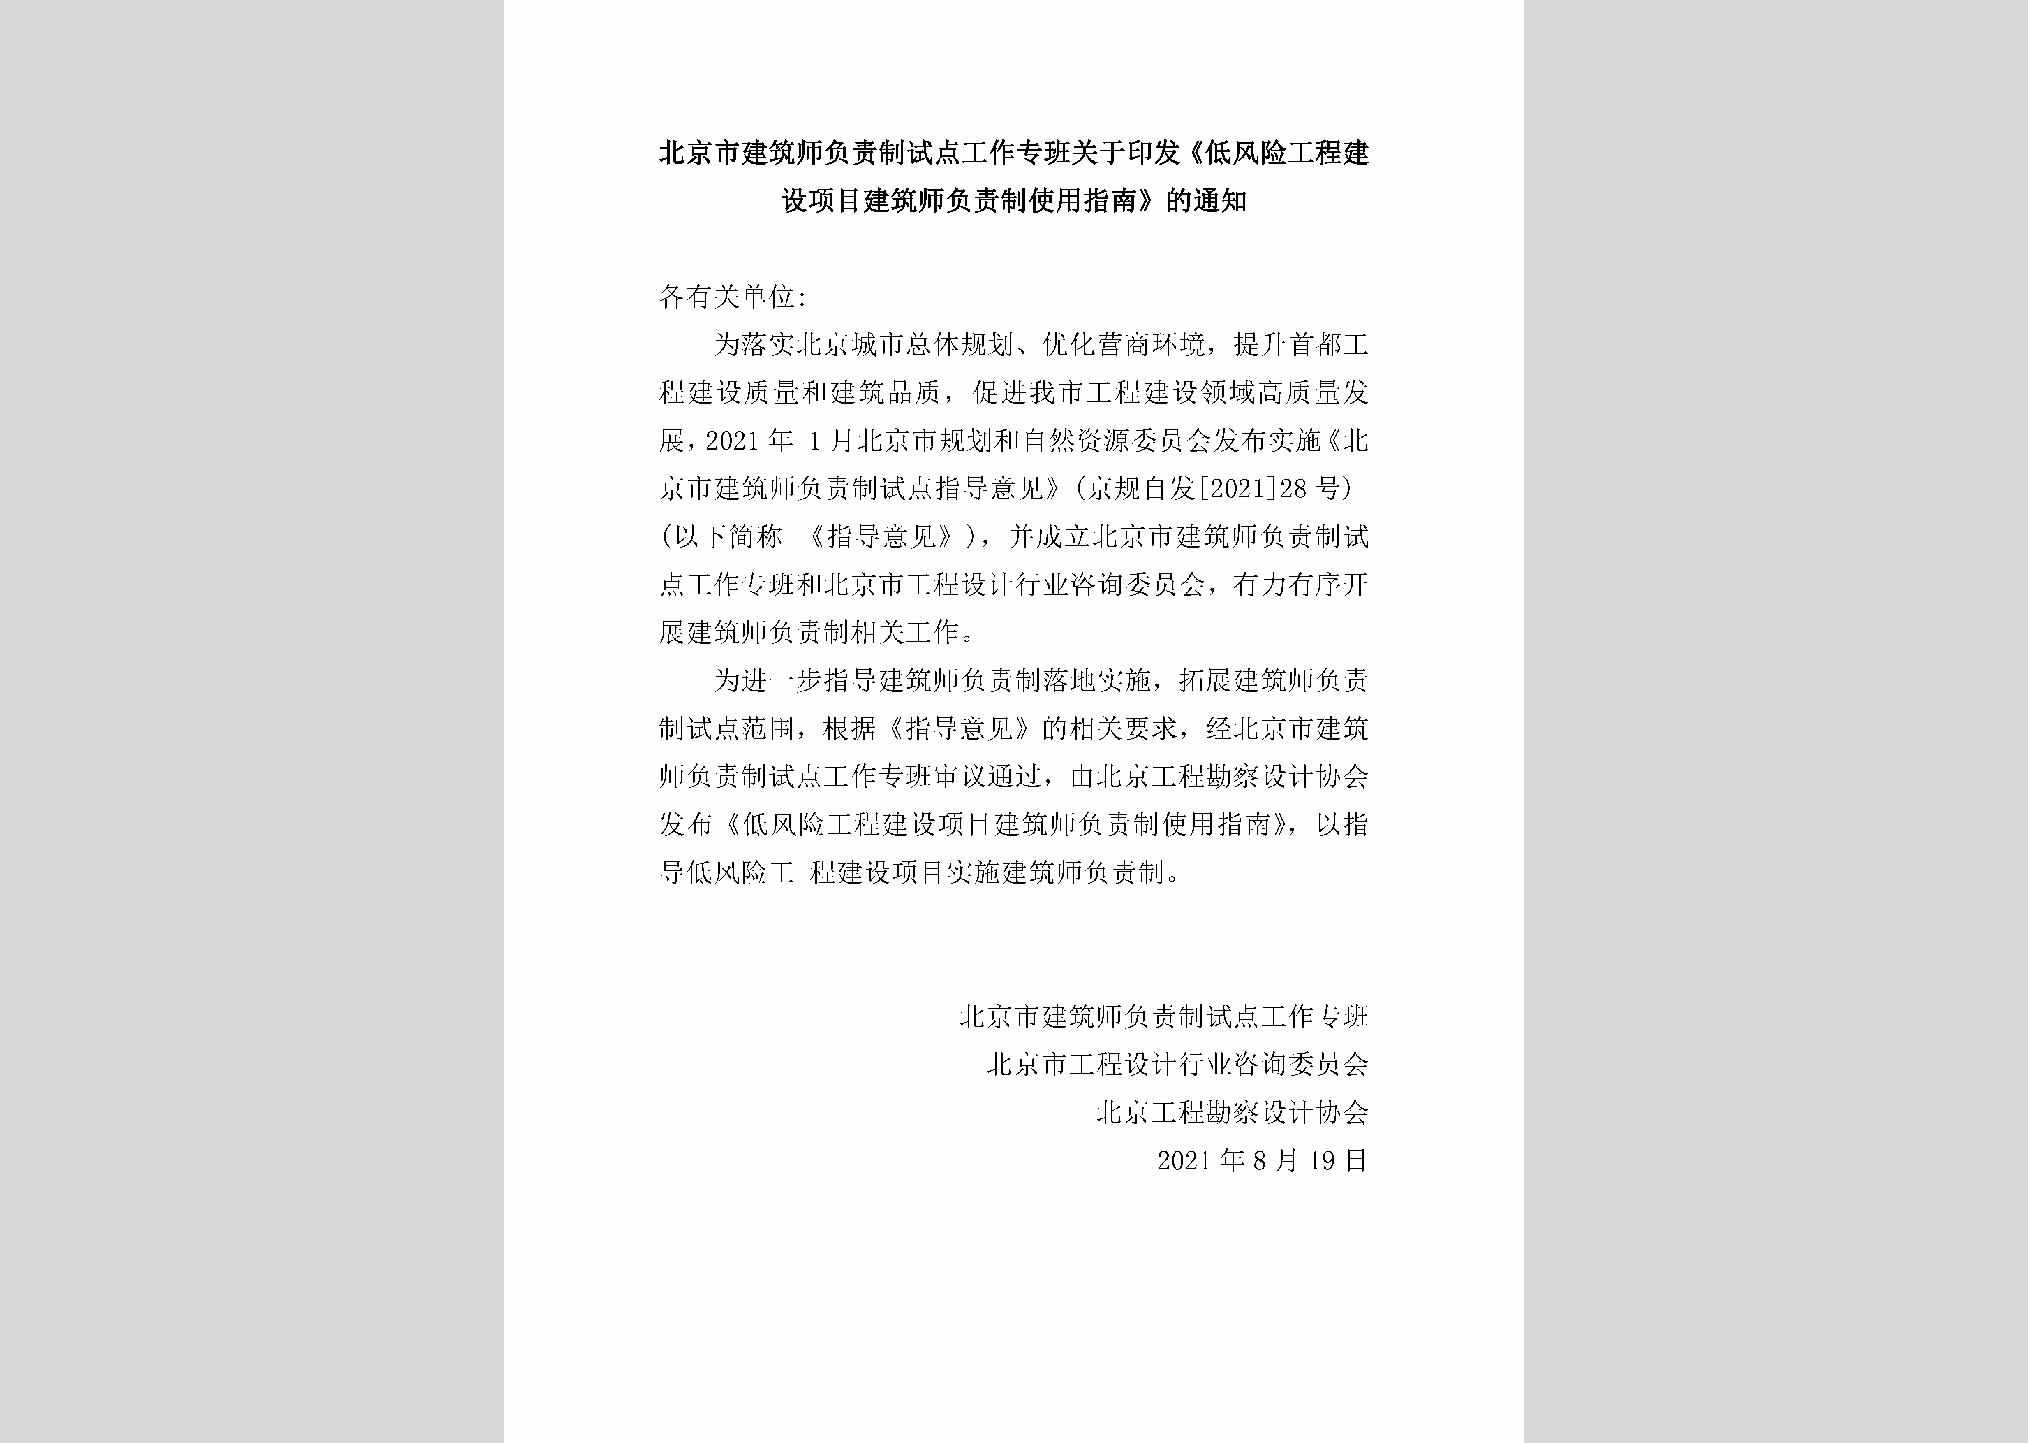 GCJSXMJZ：北京市建筑师负责制试点工作专班关于印发《低风险工程建设项目建筑师负责制使用指南》的通知